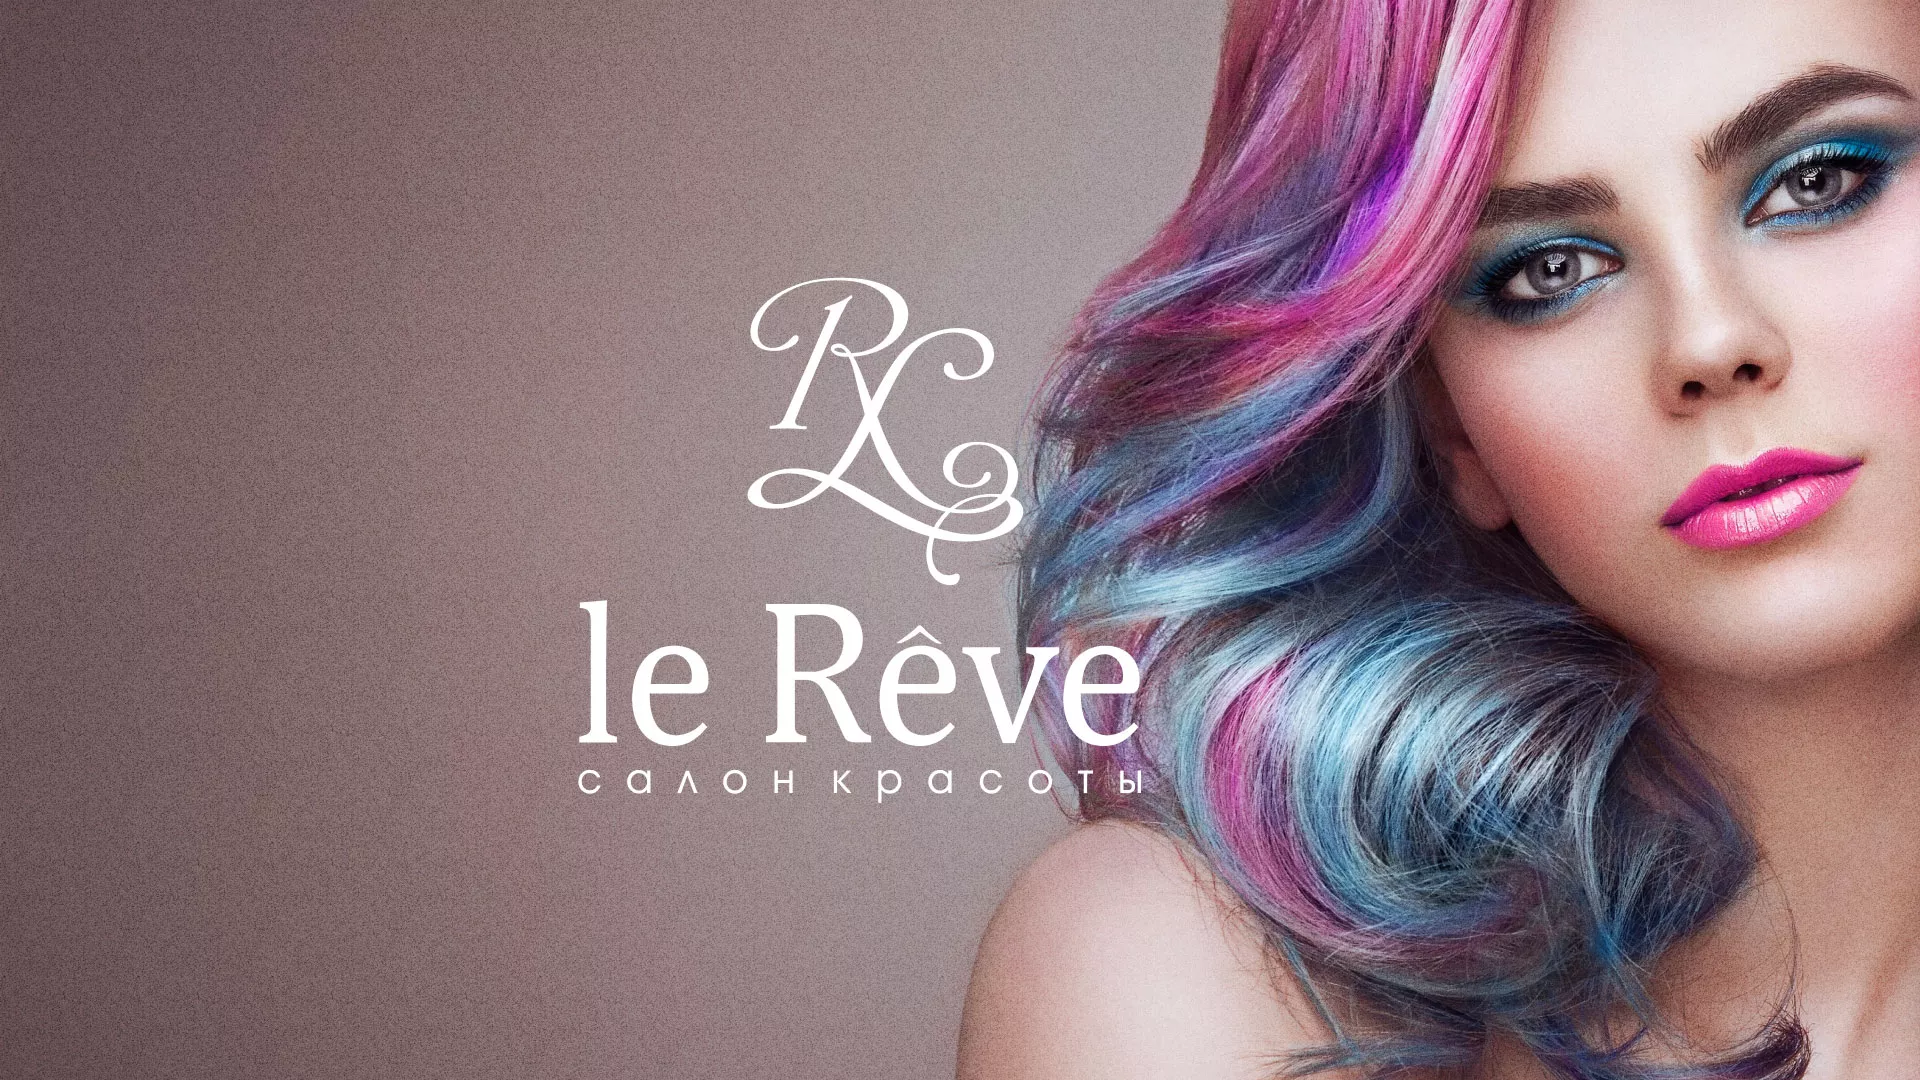 Создание сайта для салона красоты «Le Reve» в Ижевске